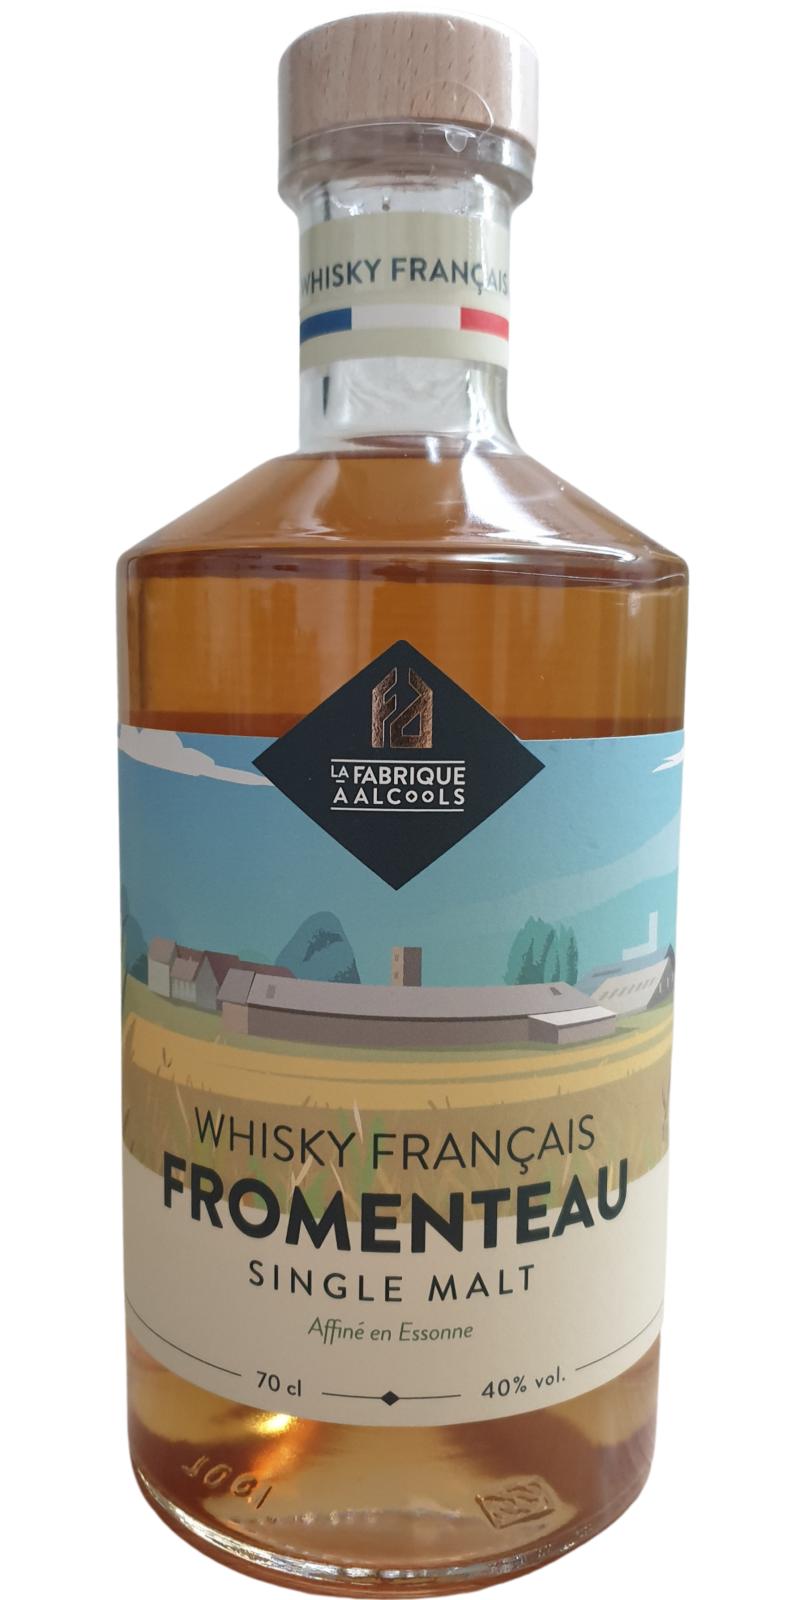 Fromenteau Whisky Francais 40% 700ml